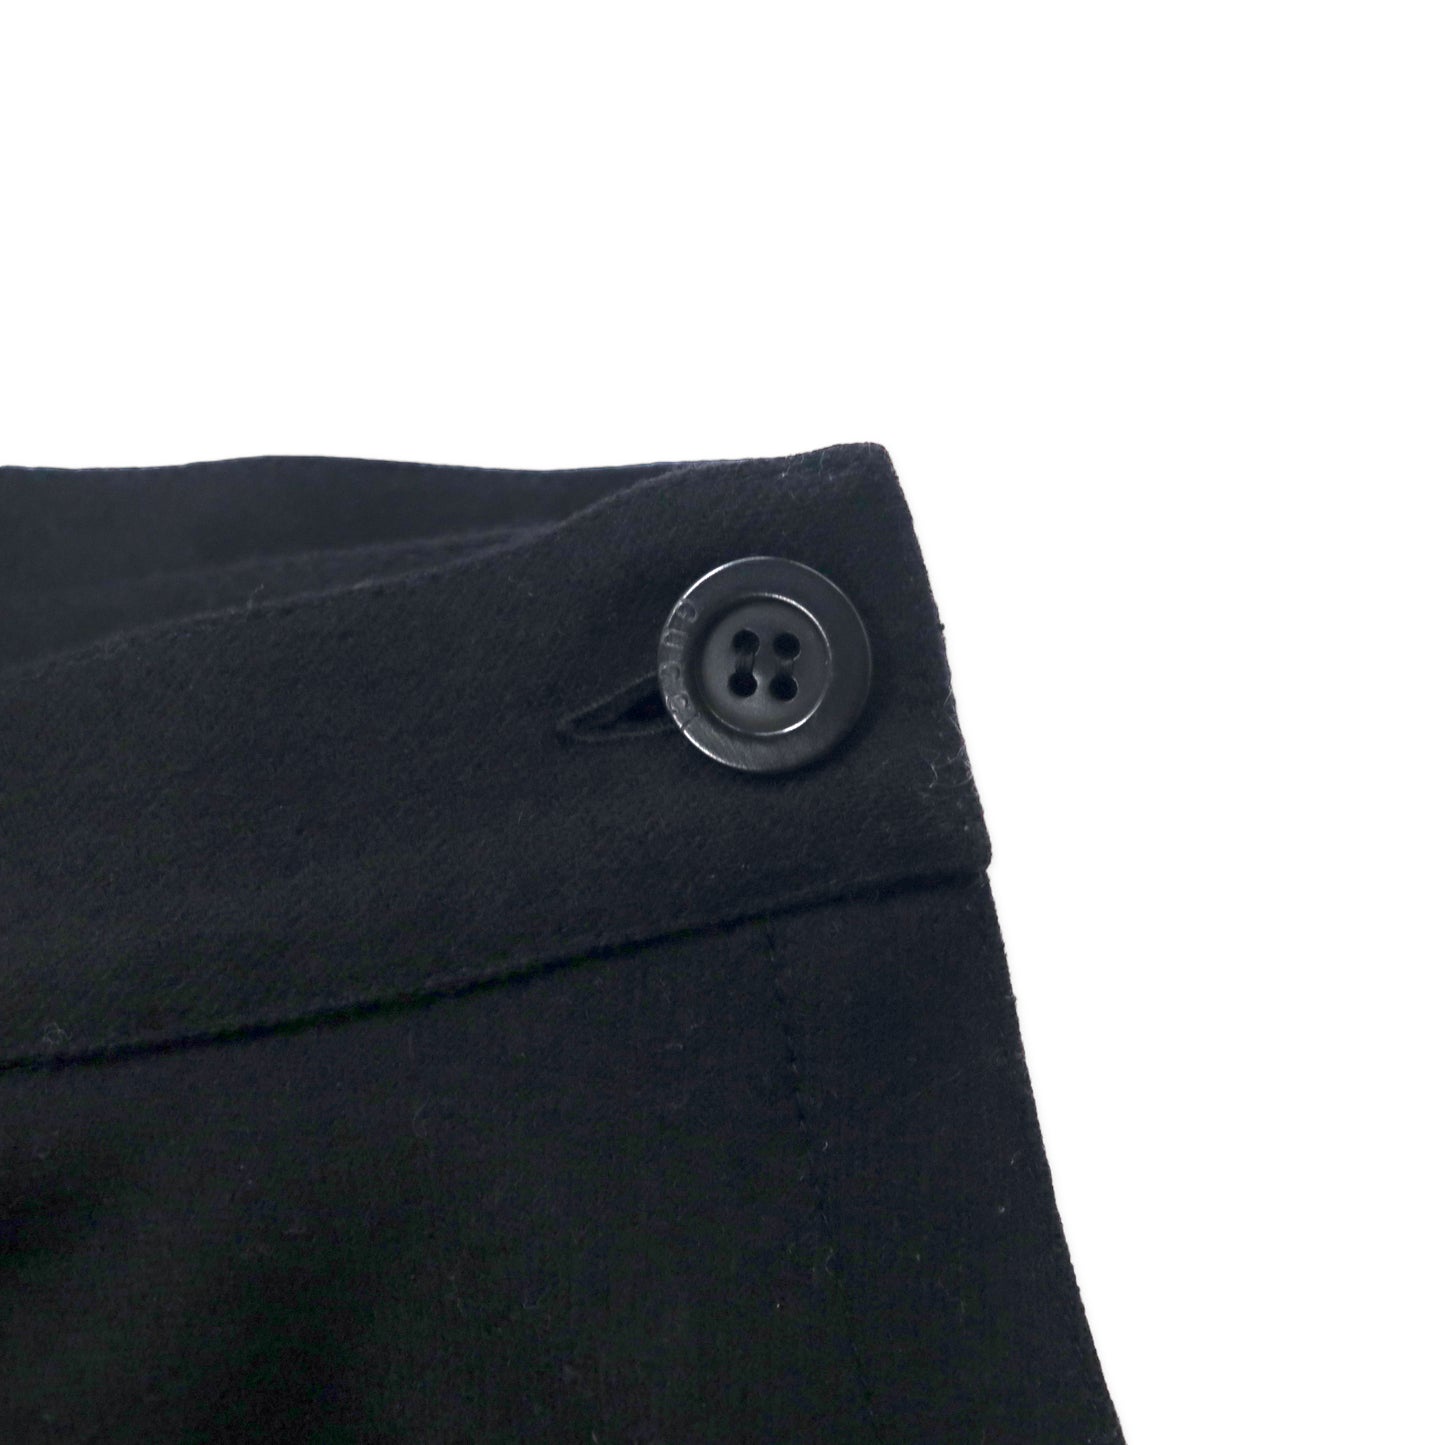 GUCCI オールドグッチ 80年代 ラップスカート FREE ブラック ウール イタリア製